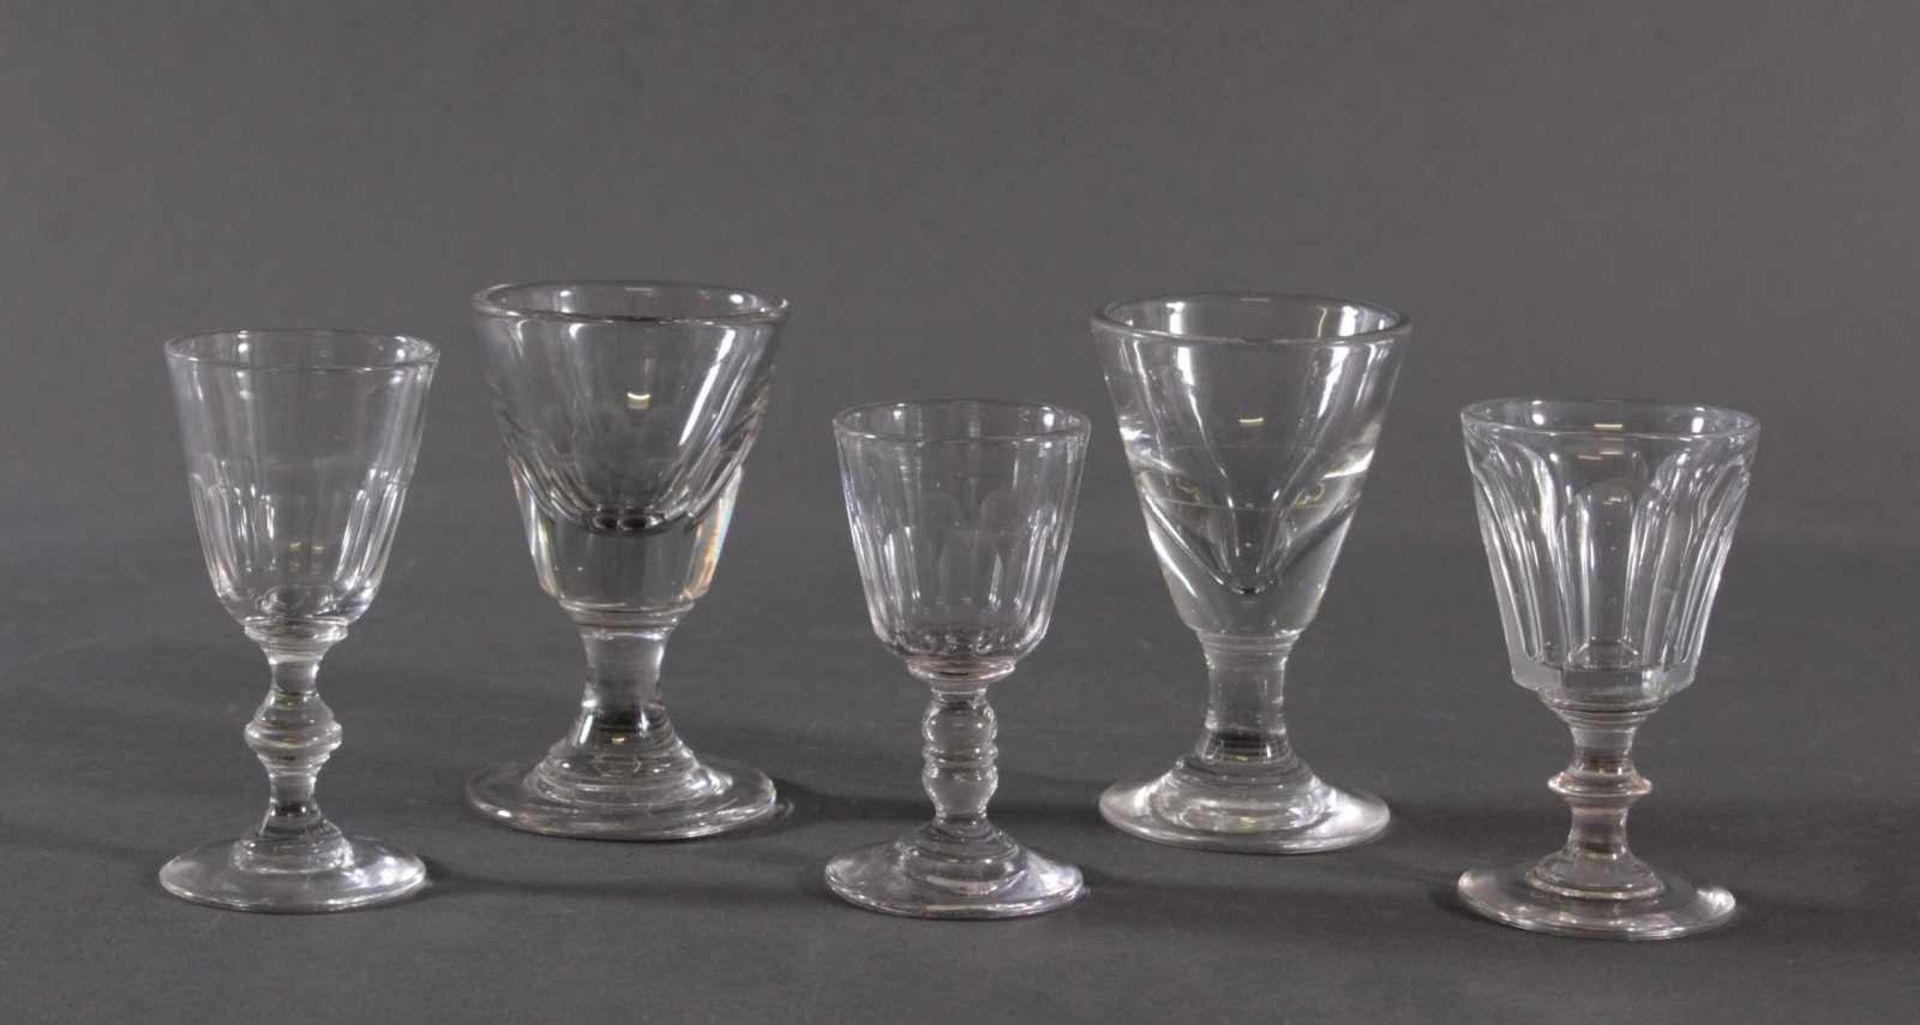 Fünf Wein-/Absinthgläser, 19. JahrhundertFarbloses Glas, massiver Stand, kelchförmige Kuppa, ca. H-